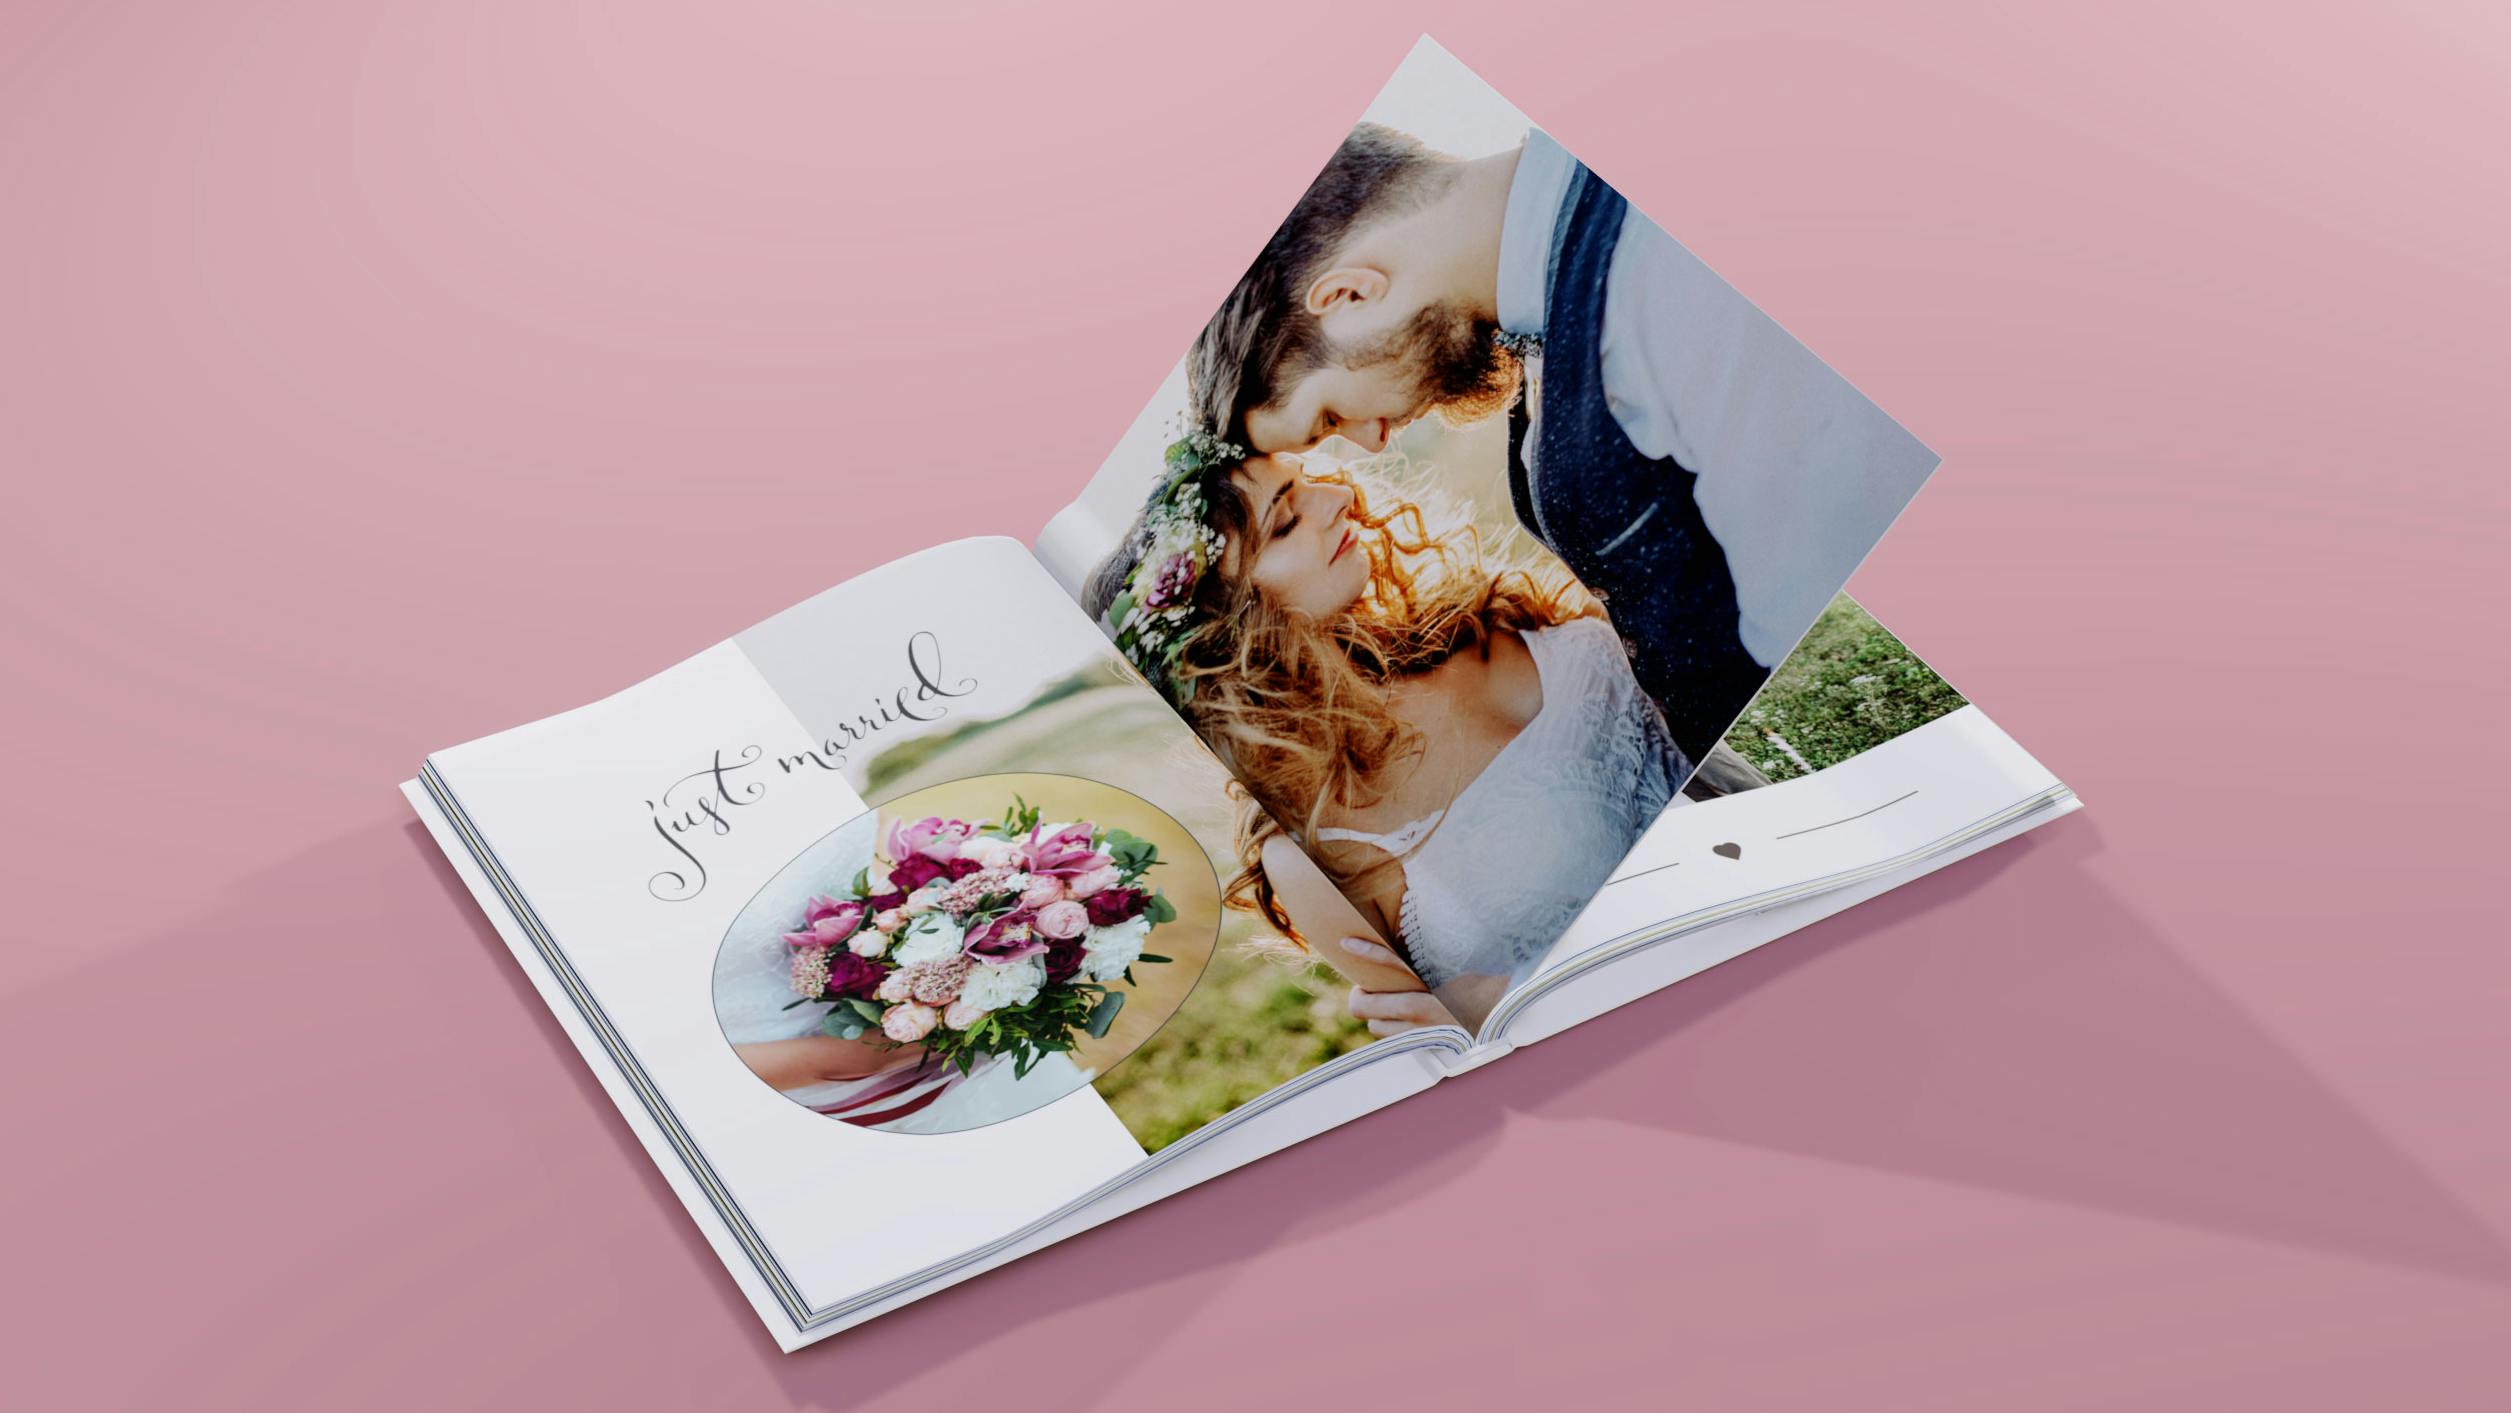 Opengeslagen fotoboek in staand formaat met trouwfoto's op een roze achtergrond